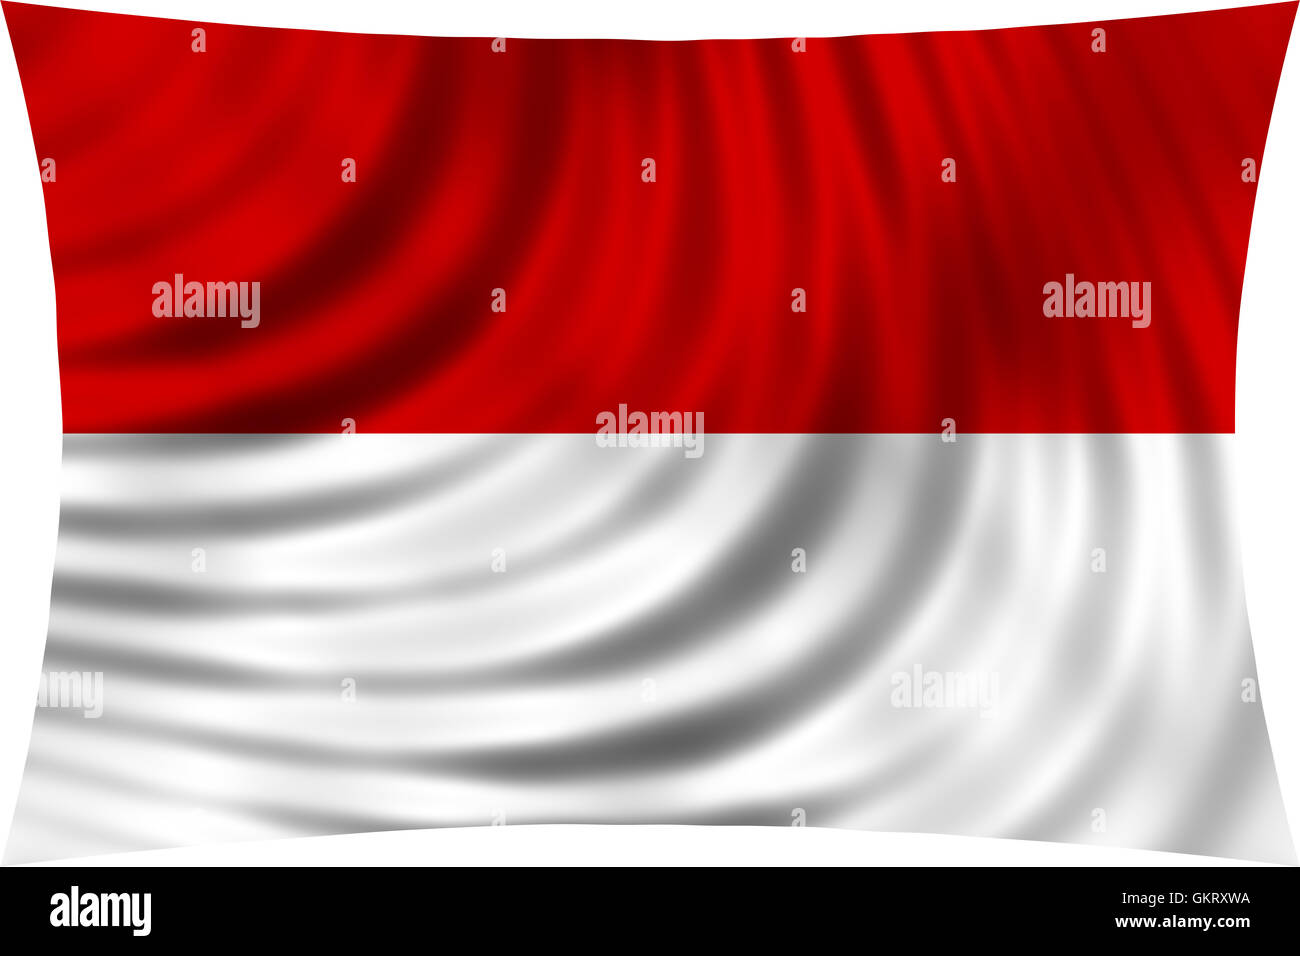 Drapeau de l'Indonésie, de Monaco, de la Hesse (Allemagne) en agitant dans vent isolé sur fond blanc. Drapeau national indonésien. Signe patriotique Banque D'Images